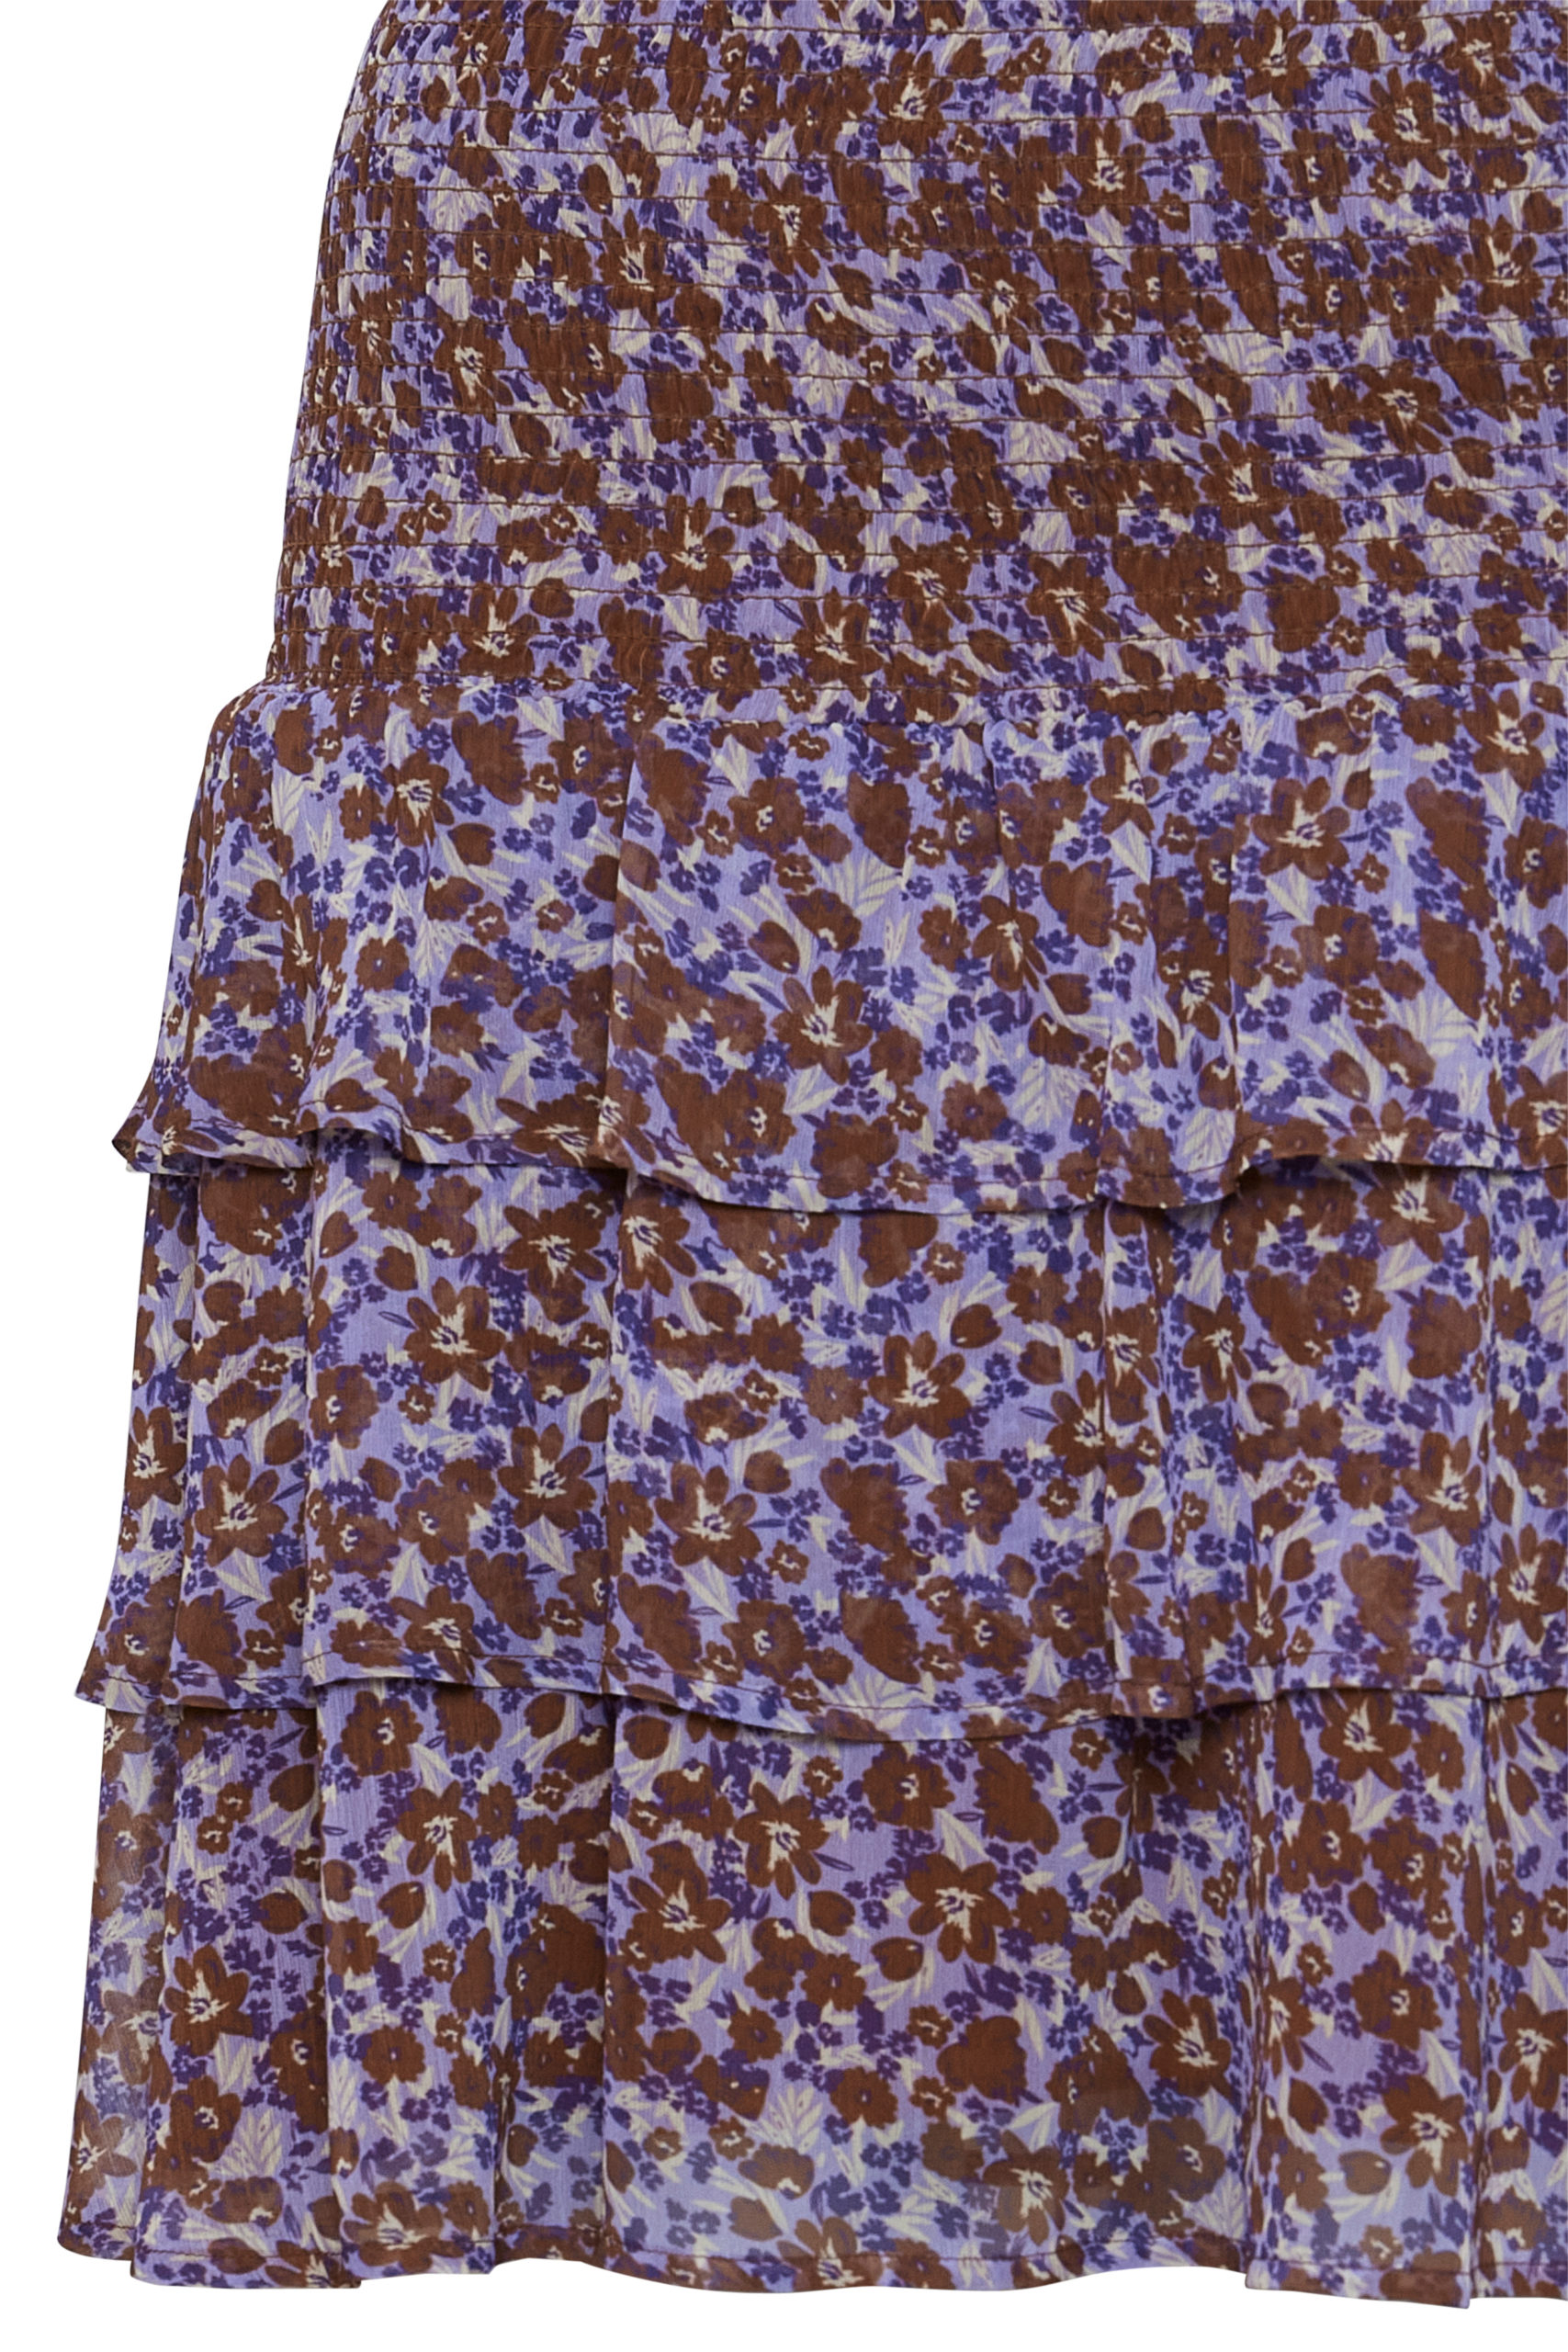 ByHima Petunia Short Skirt item closeup